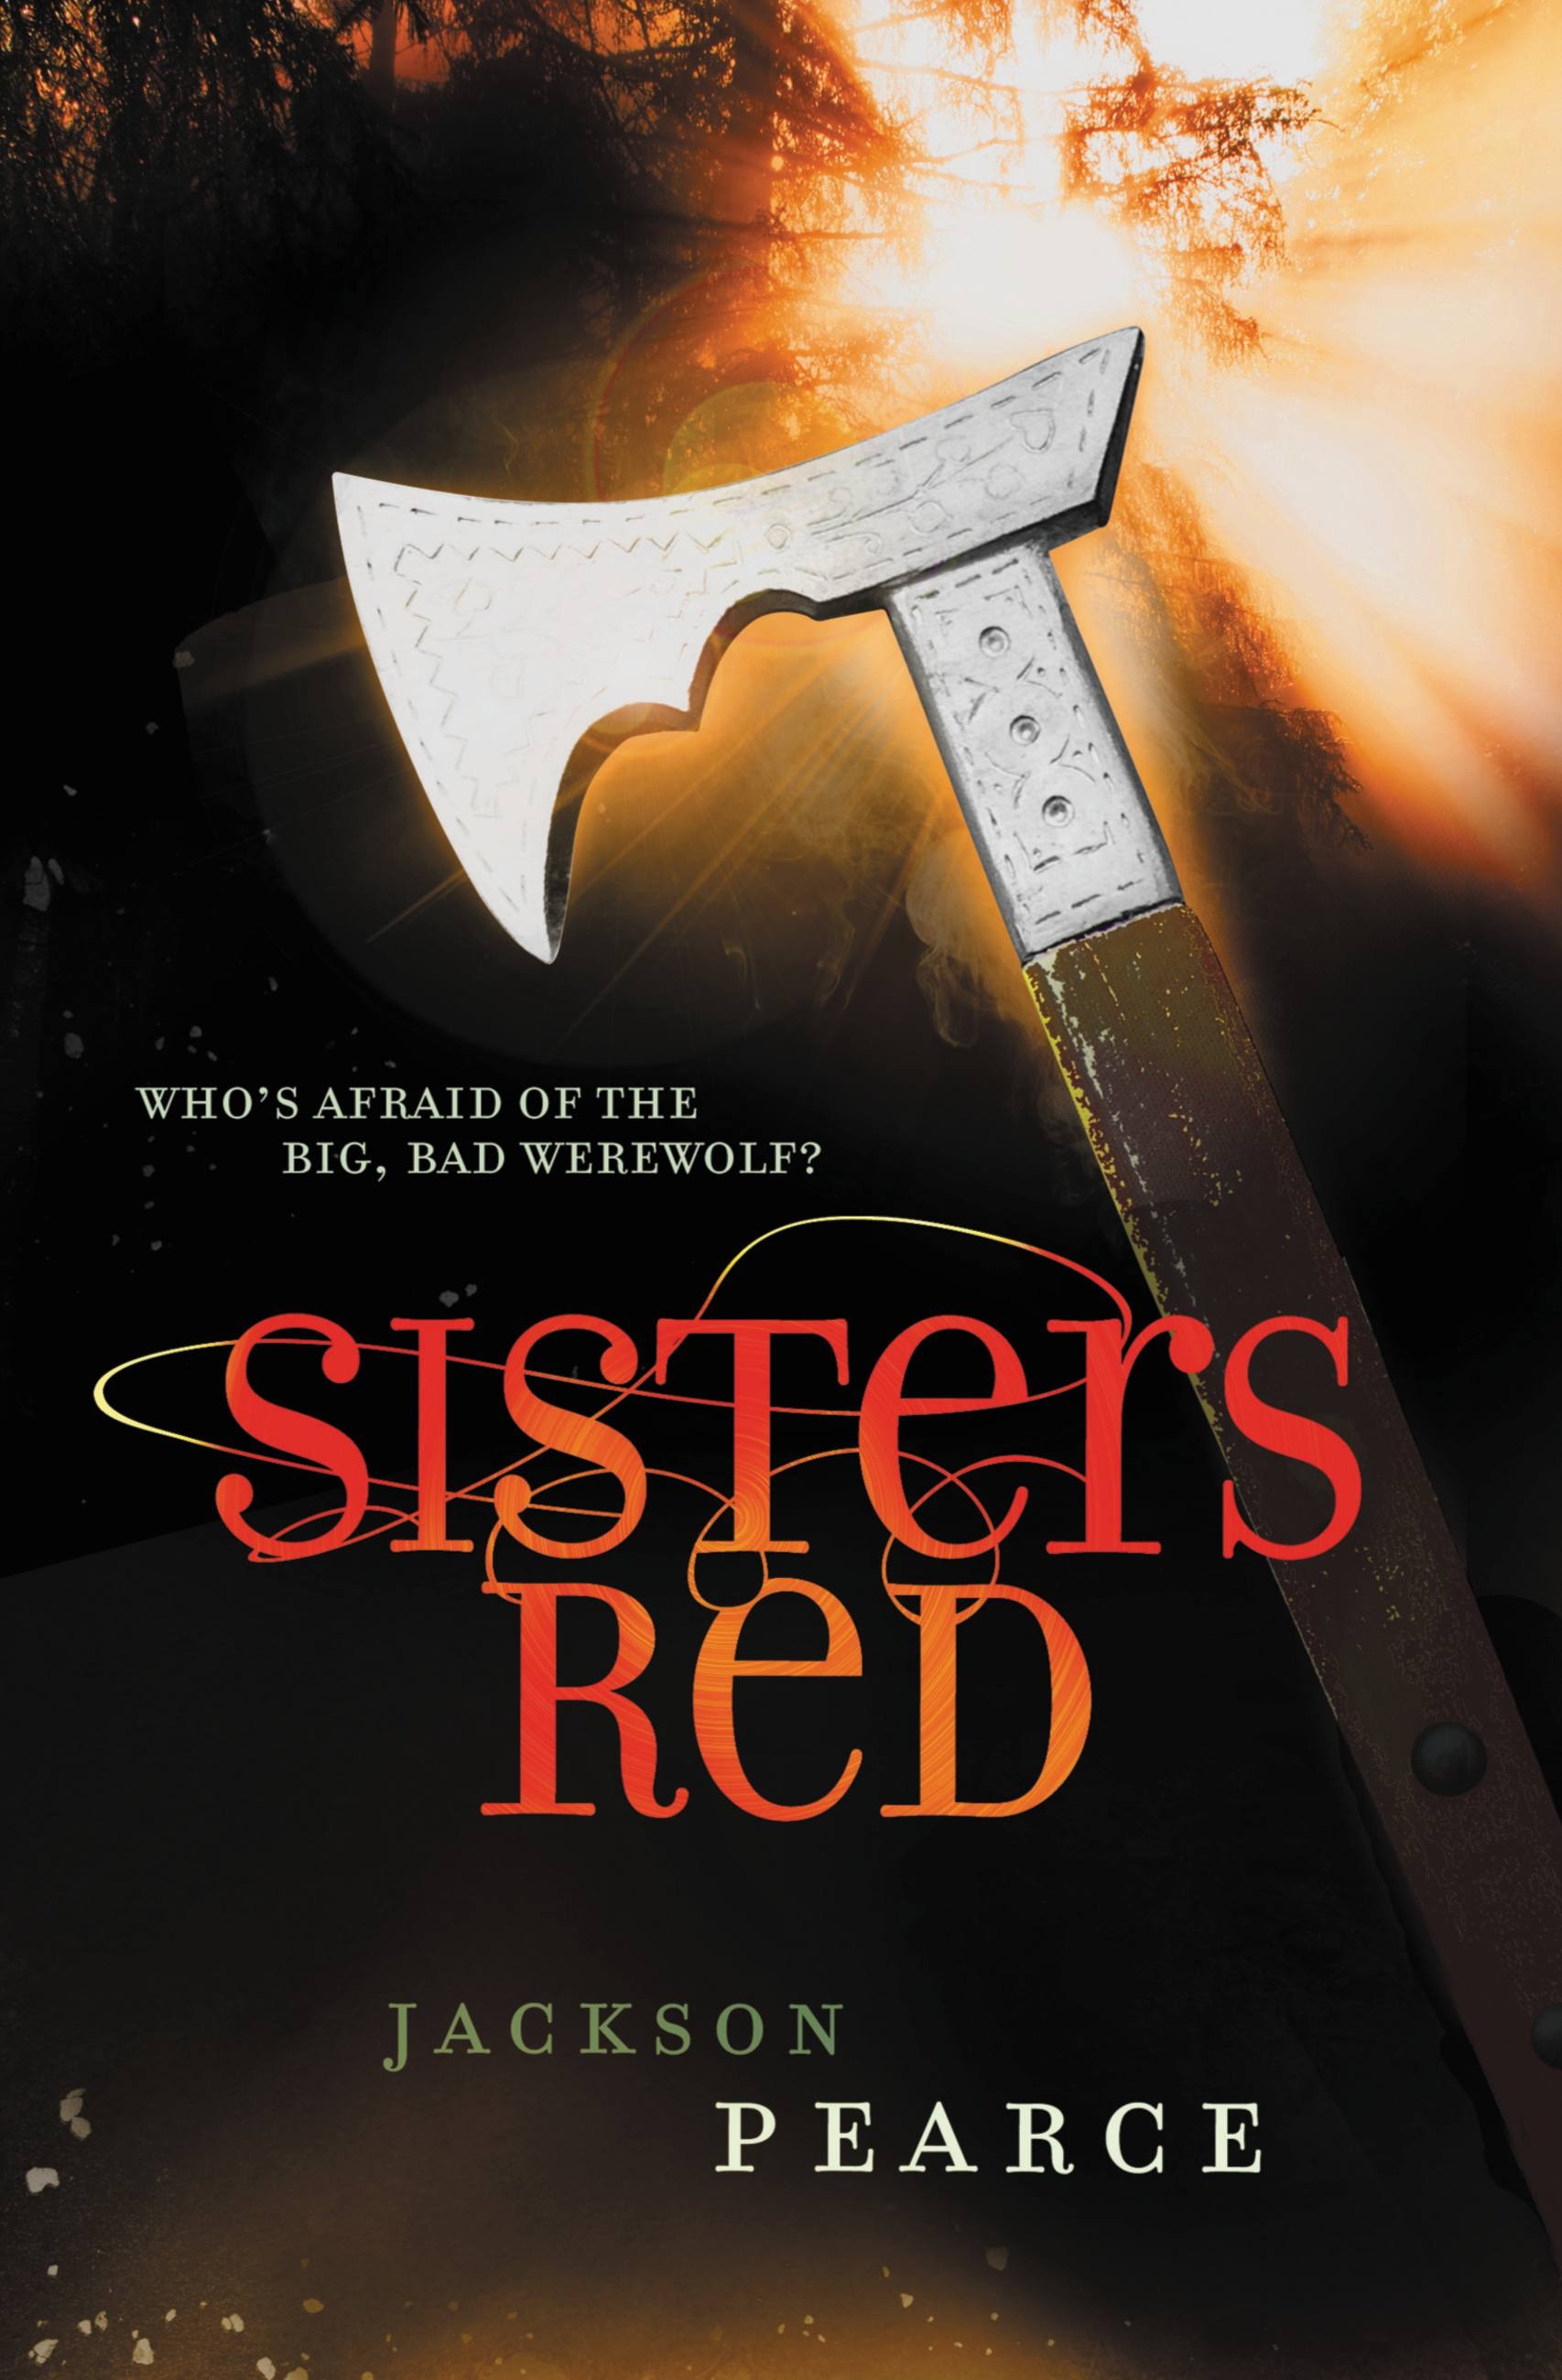 Red sister. Red Sisterhood. Sister Red.